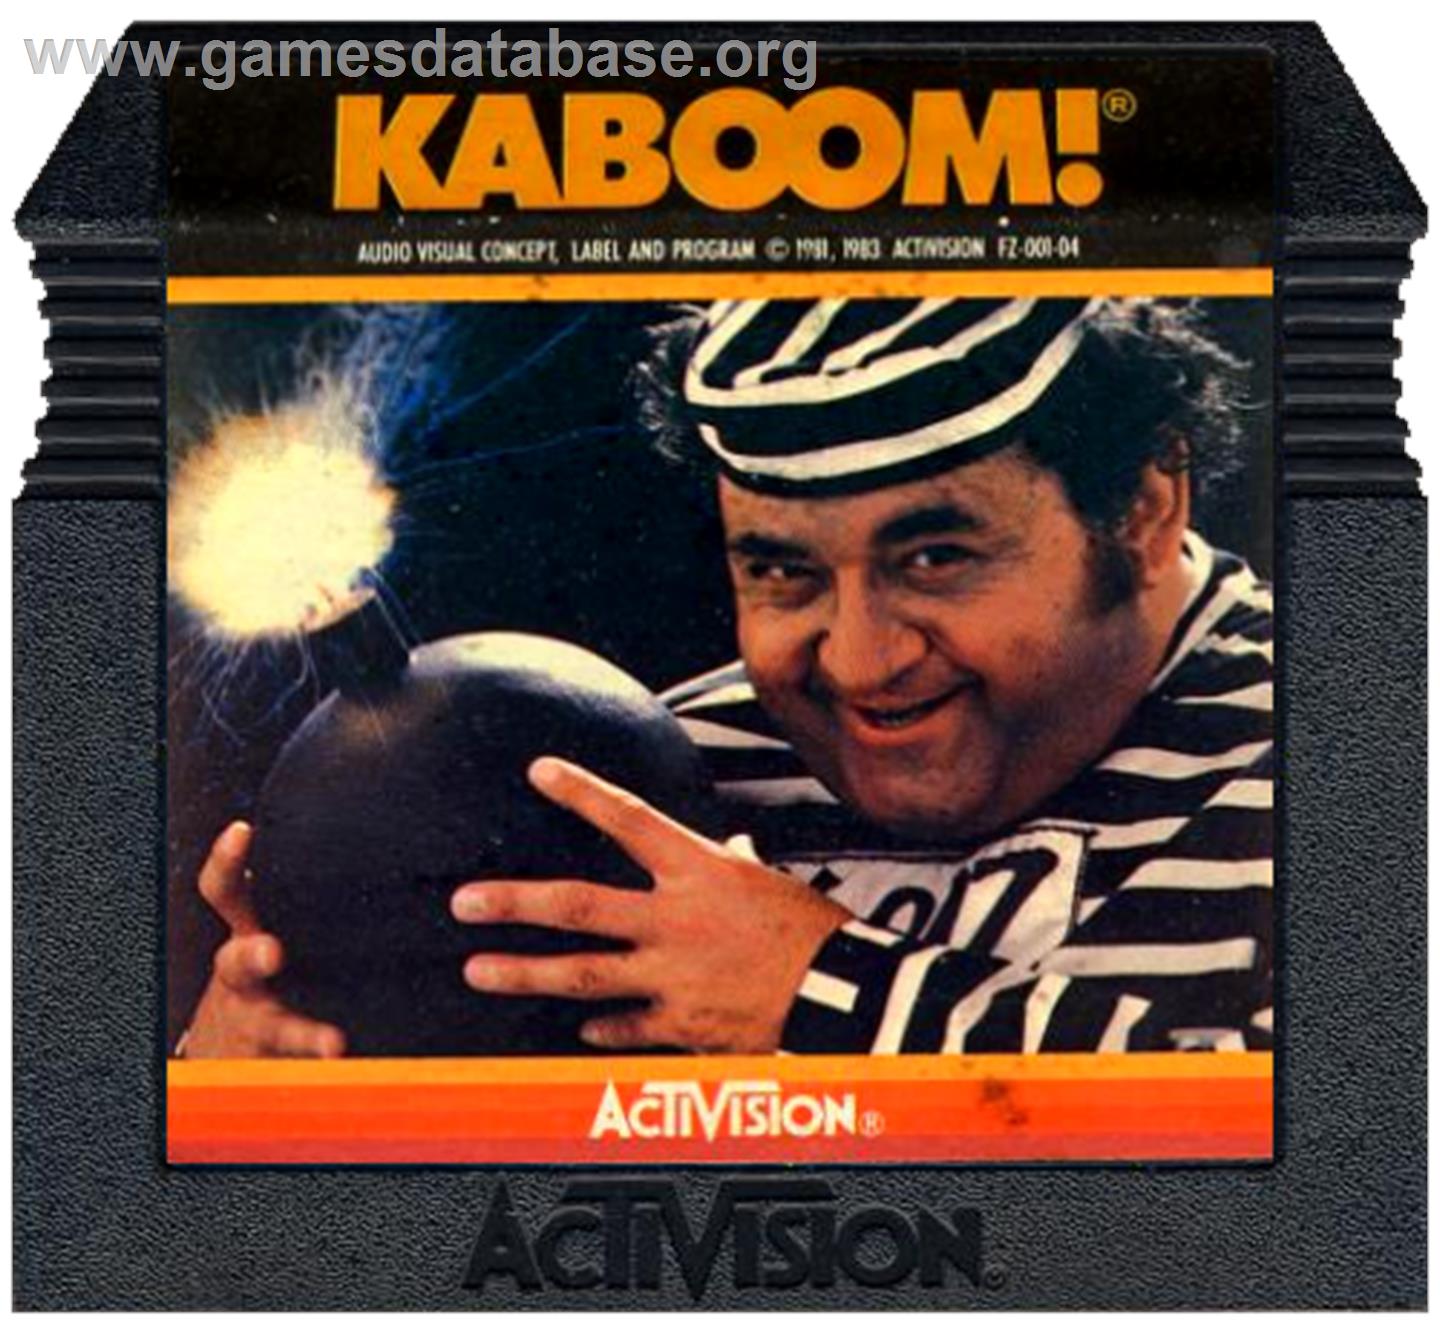 Kaboom - Atari 5200 - Artwork - Cartridge